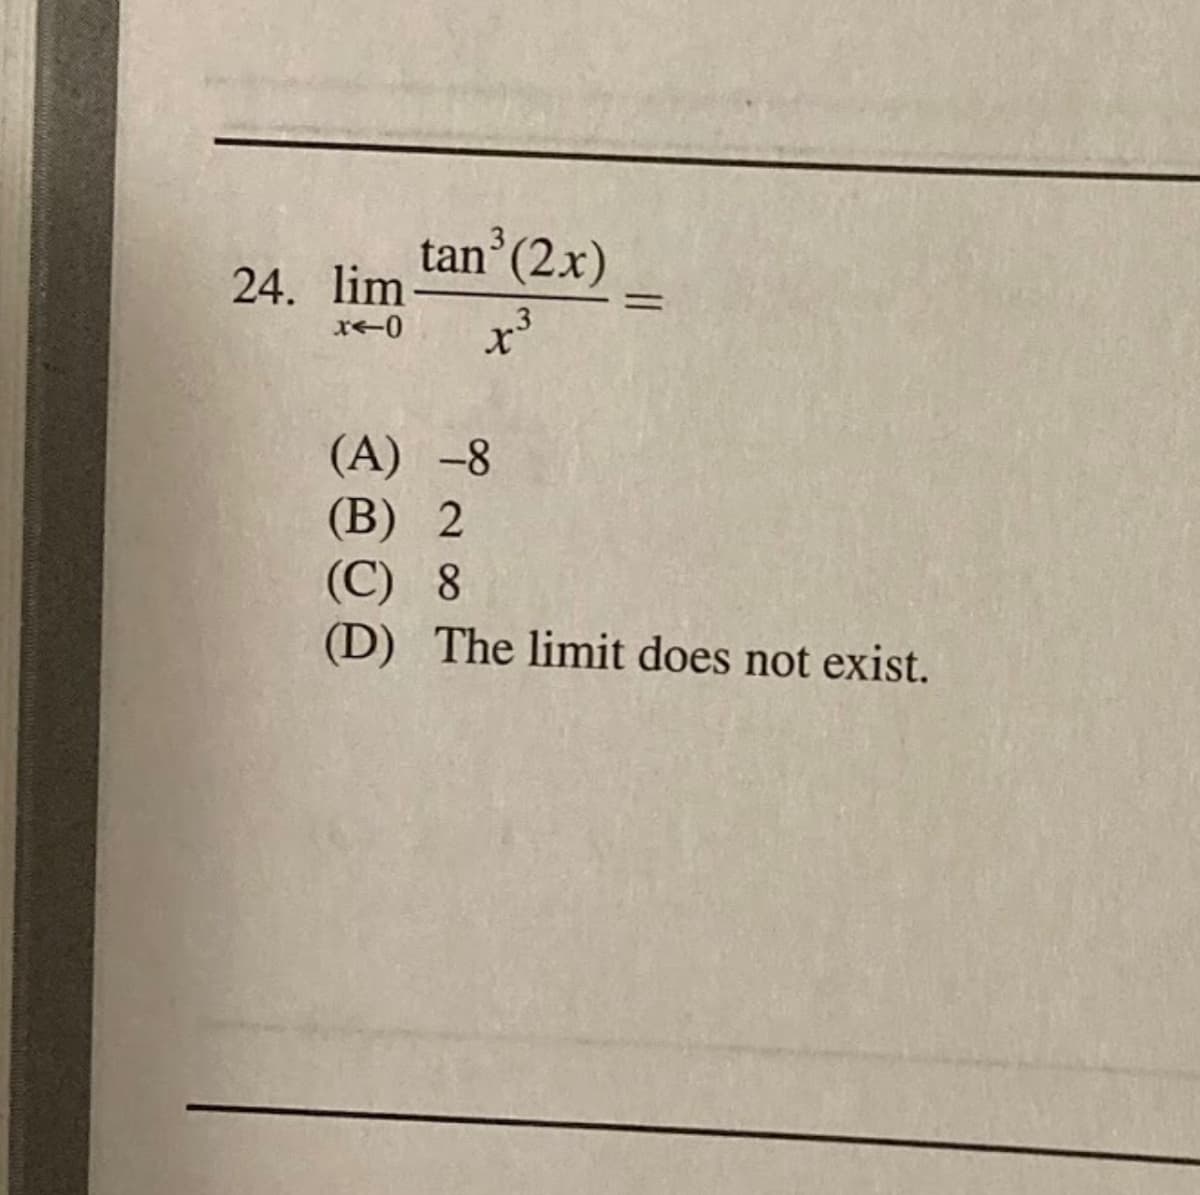 3
tan (2x)
24. lim
%3D
(A) -8
(B) 2
(C) 8
(D) The limit does not exist.
